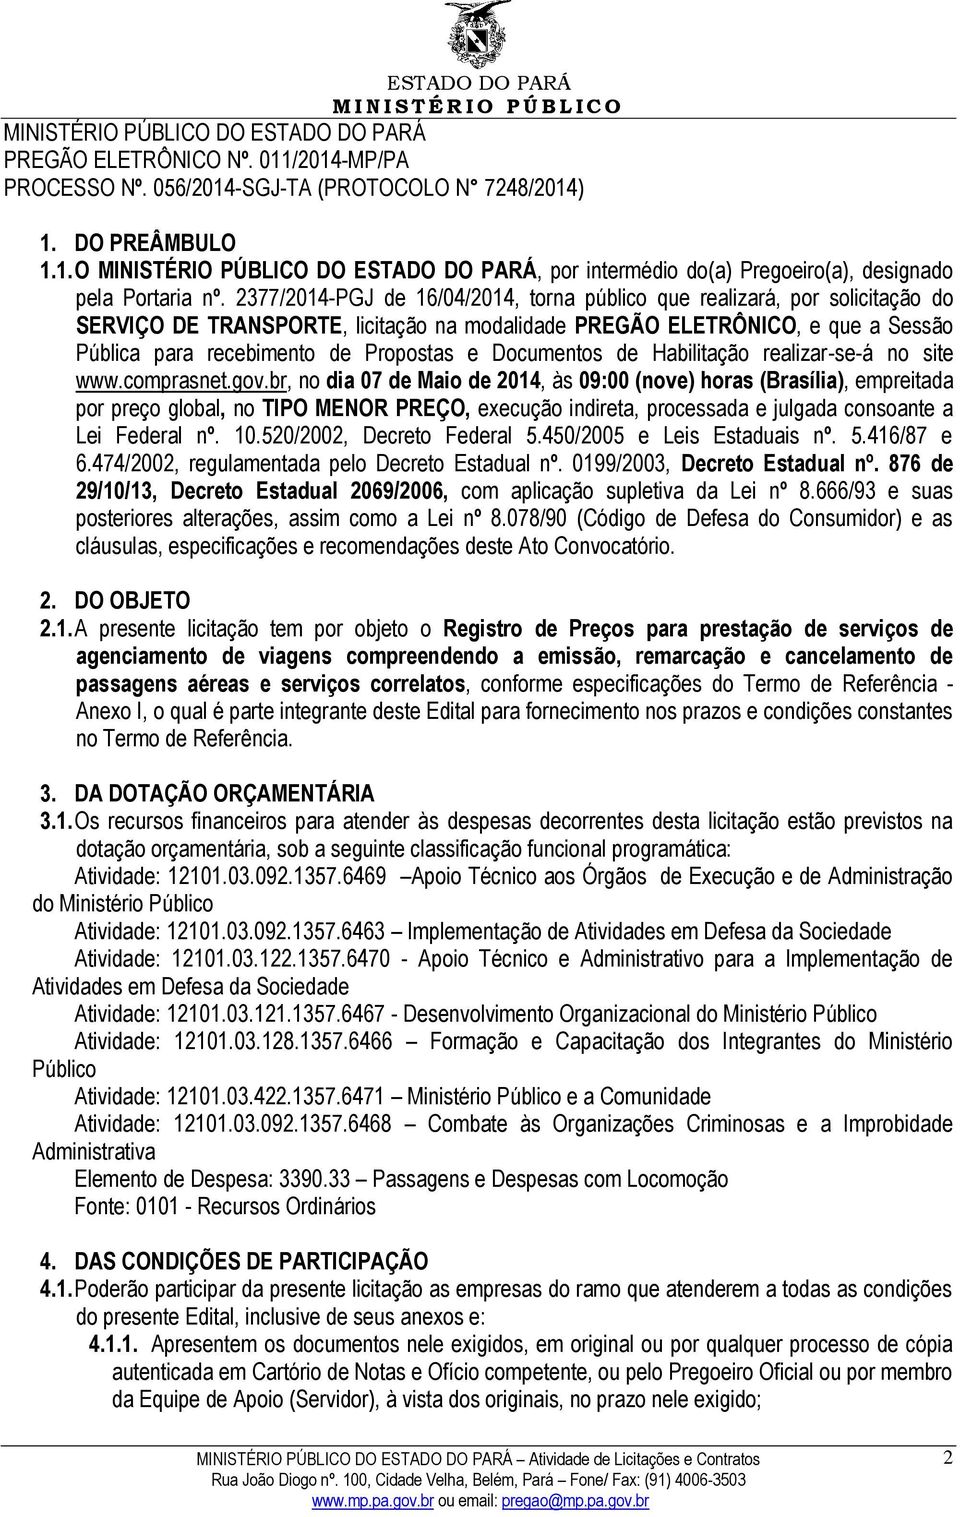 Documentos de Habilitação realizar-se-á no site www.comprasnet.gov.